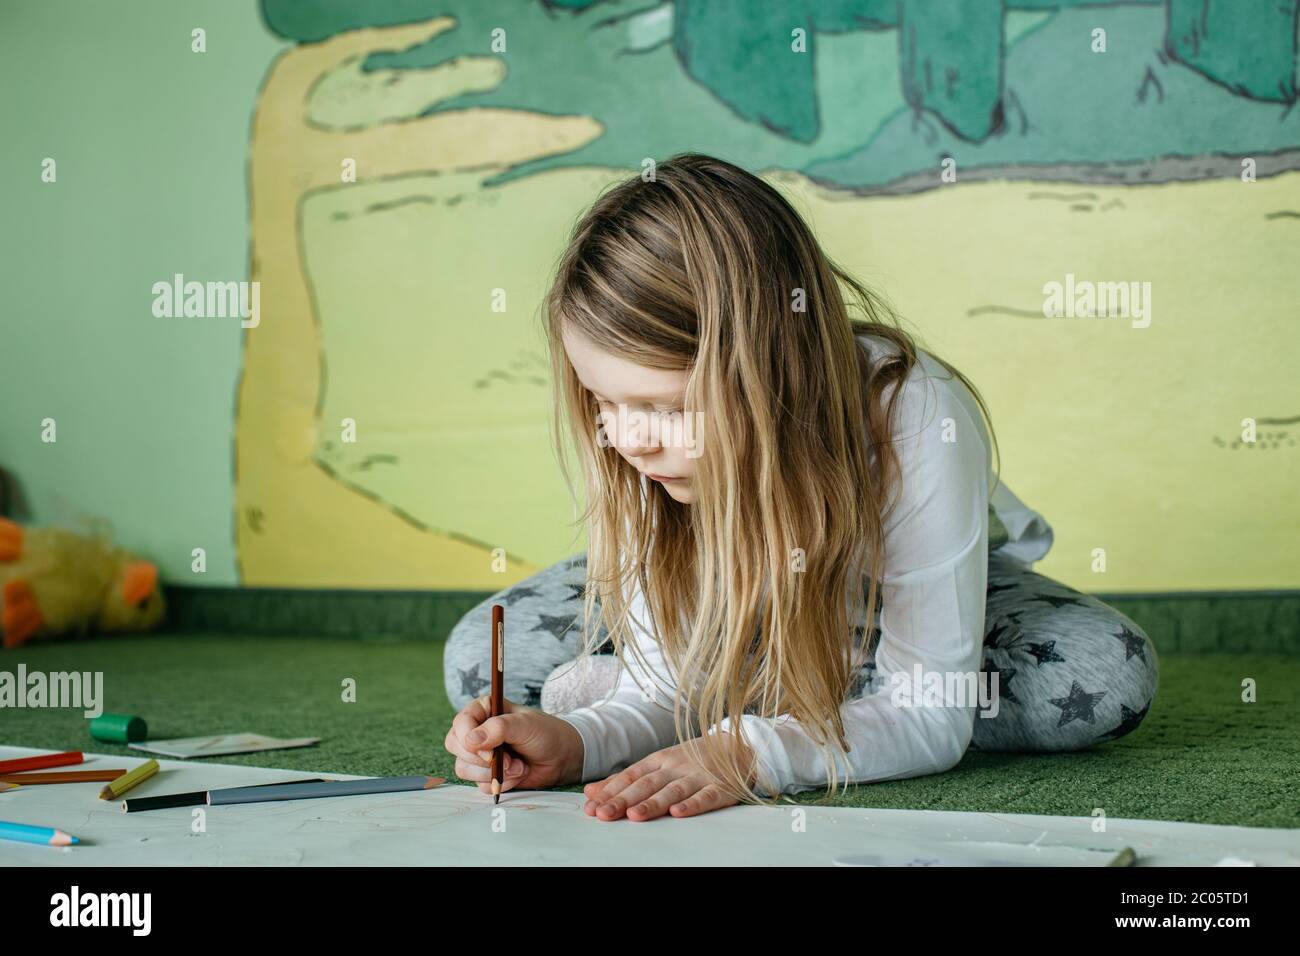 Mädchen auf dem Boden sitzen und ein Bild mit Buntstiften zeichnen Stockfoto